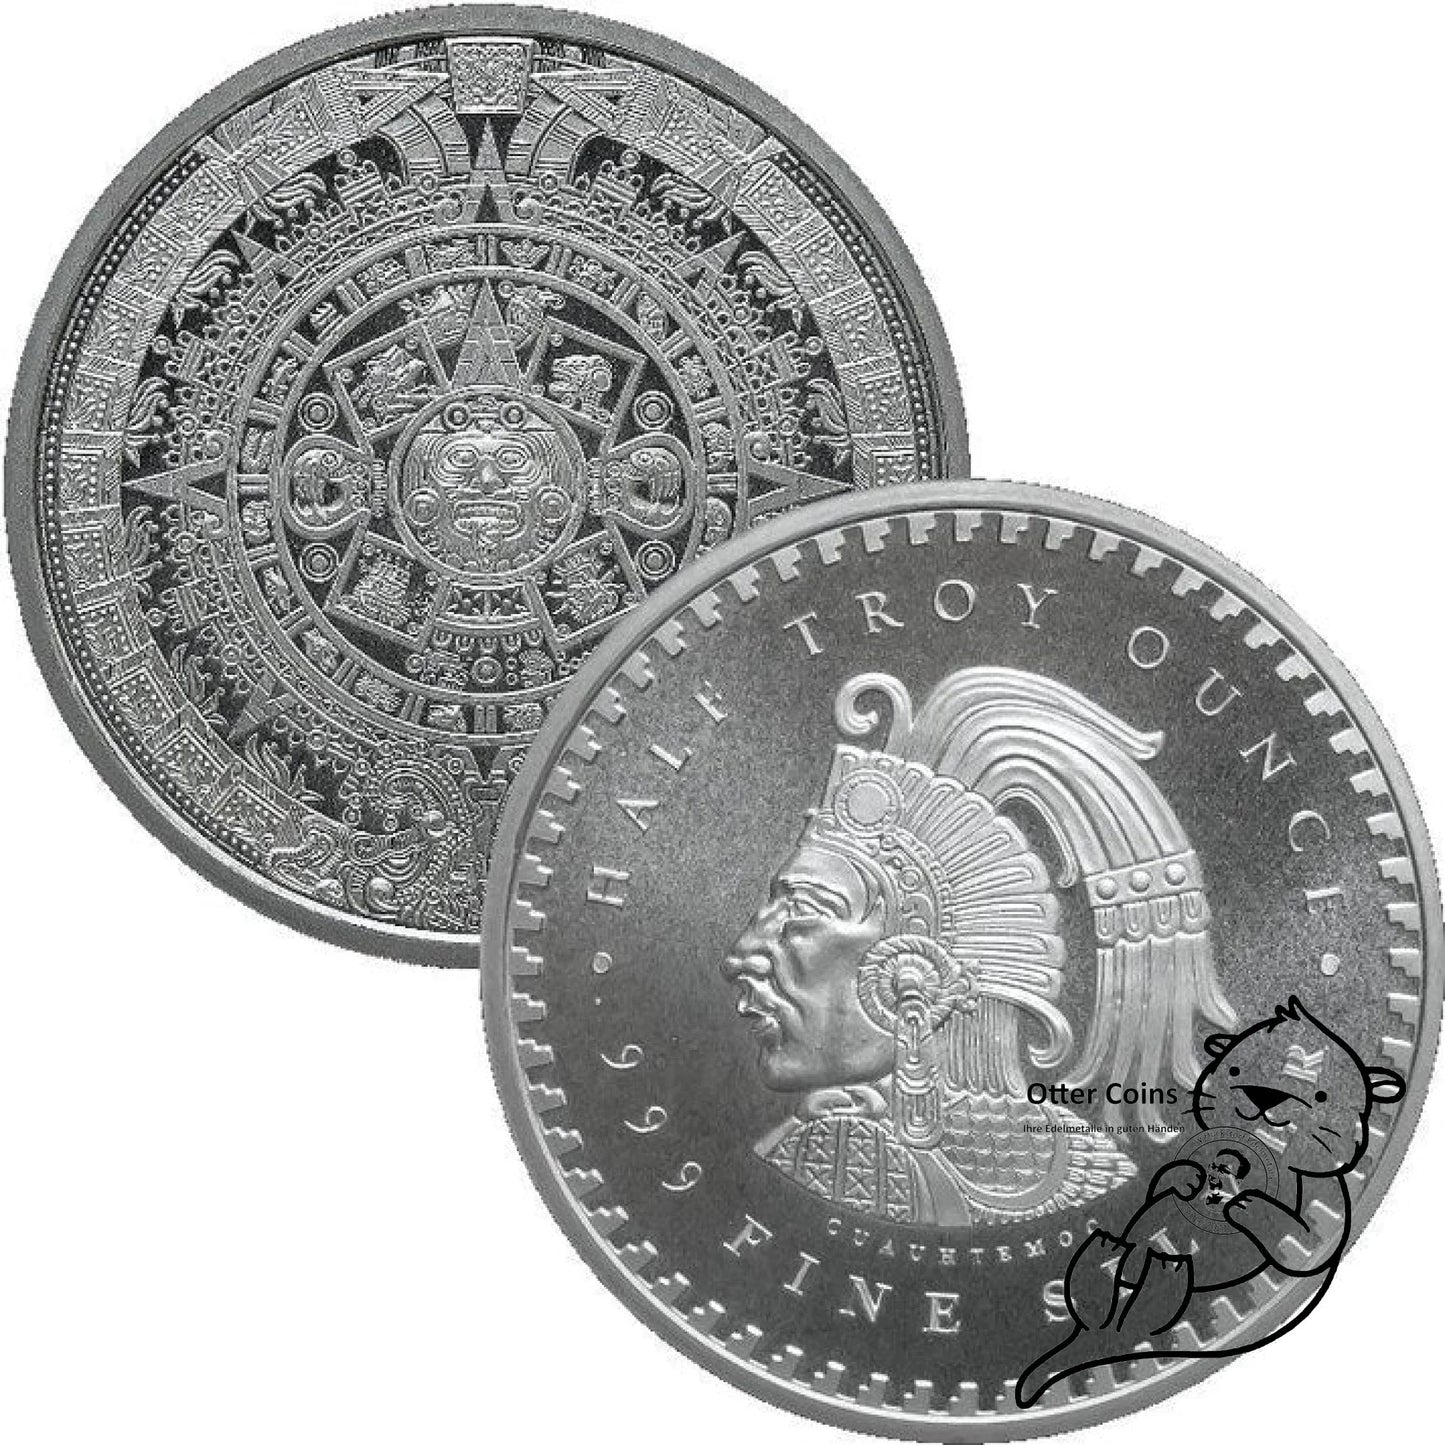 Aztekenkalender 1/4 oz Silbermünze